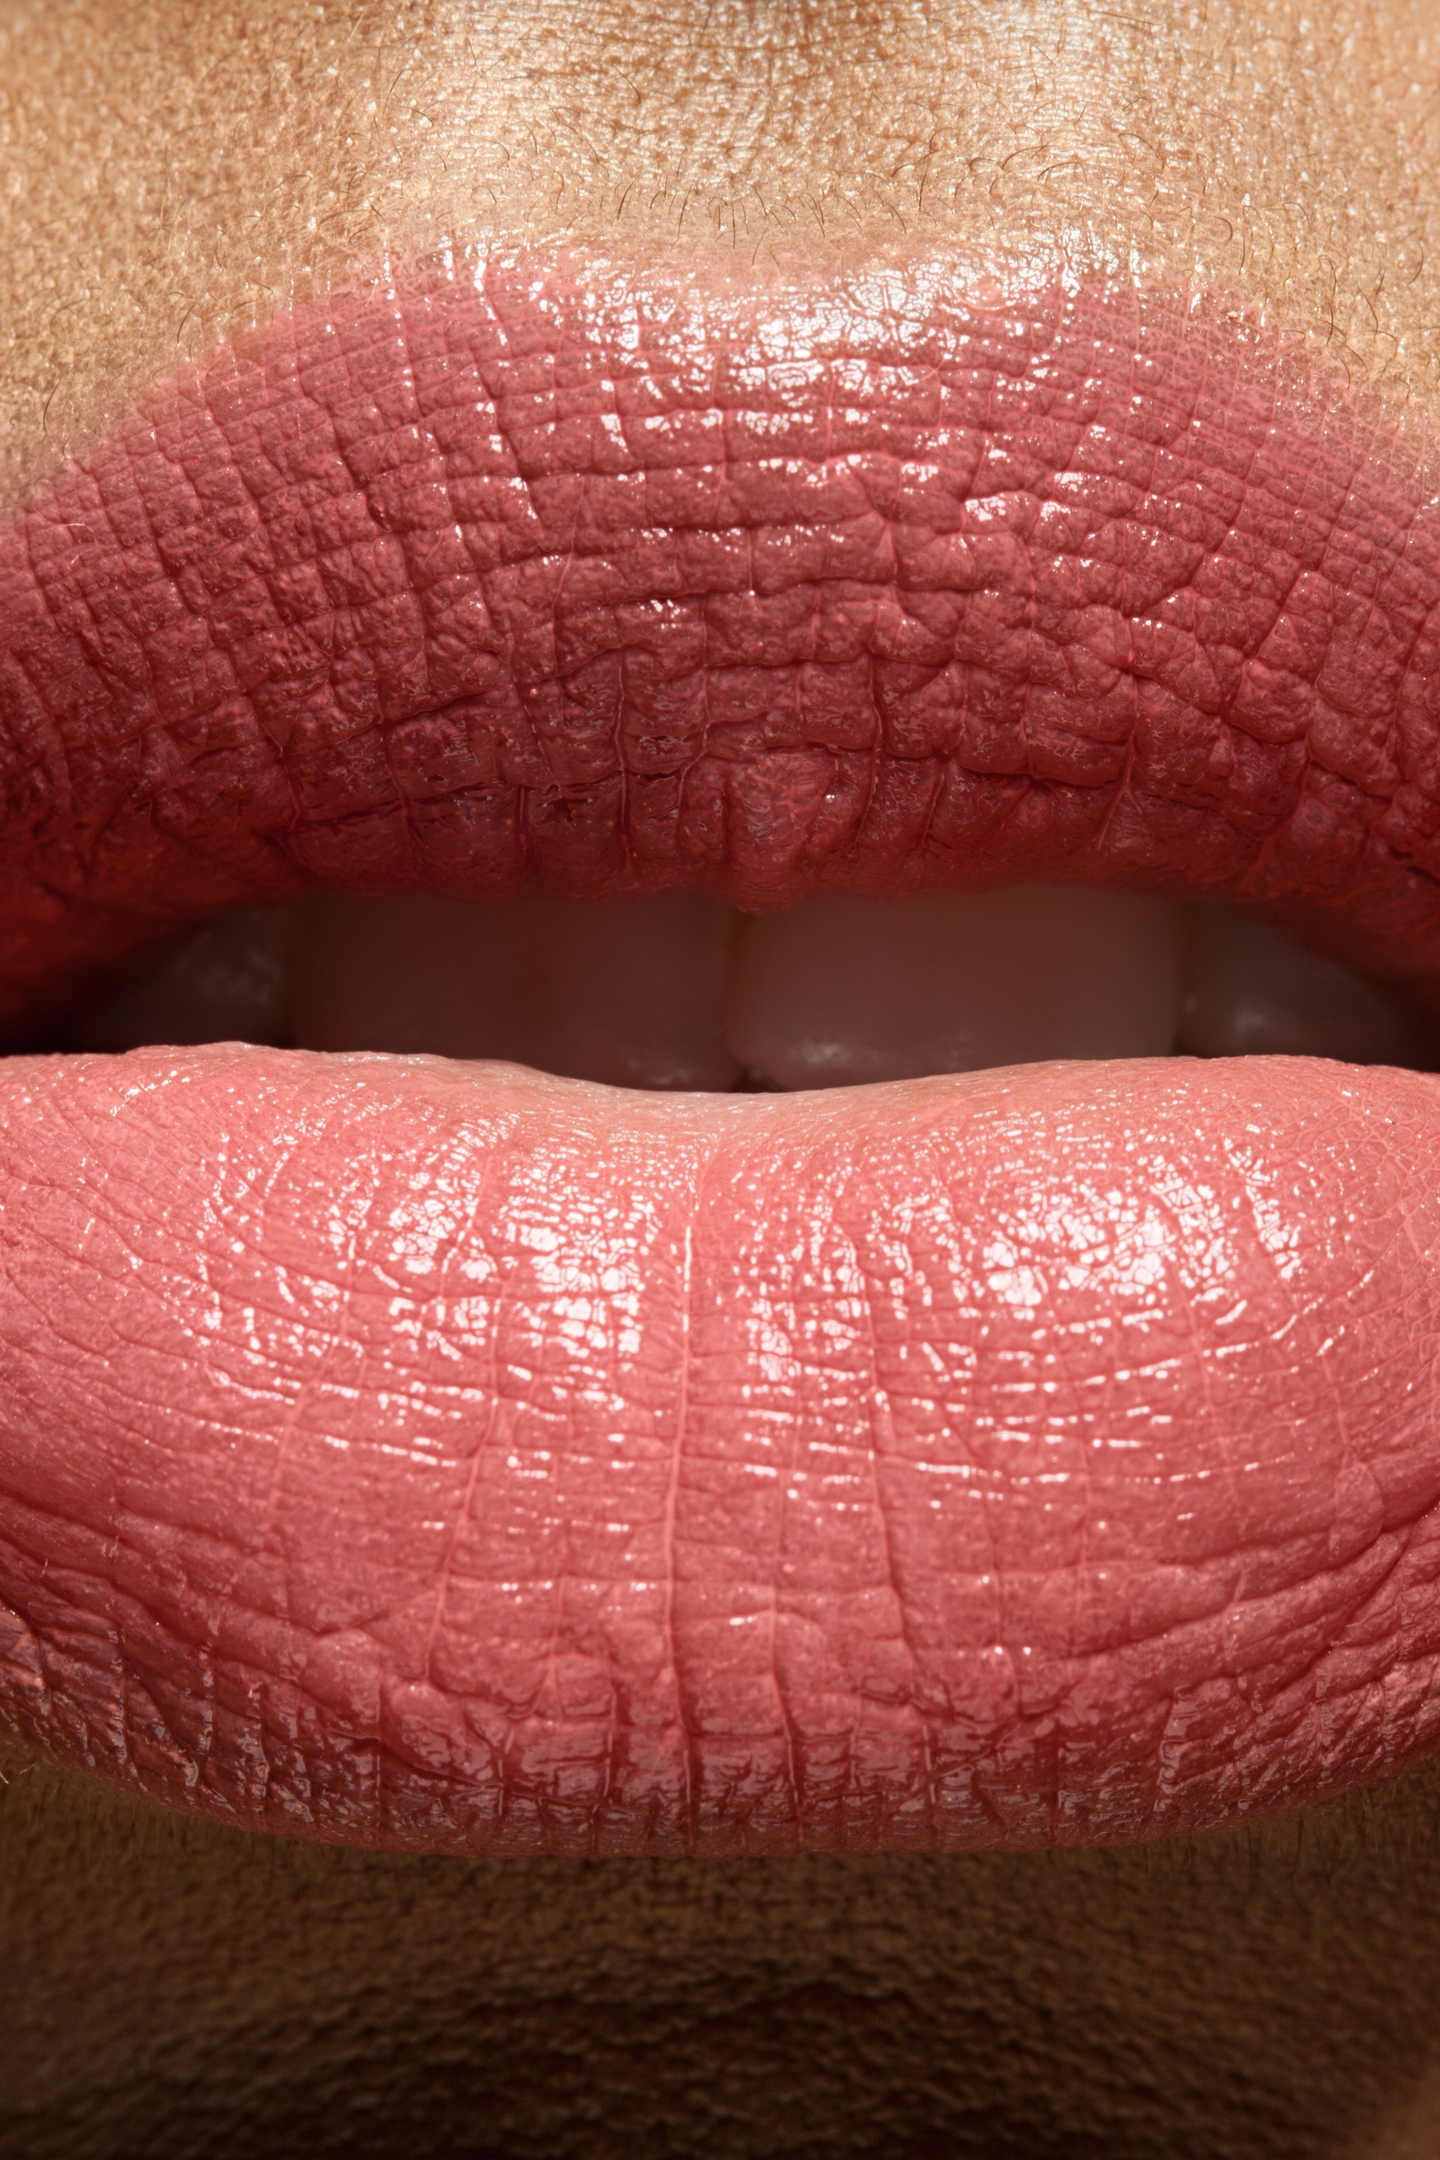 Image: Lips, mouth, lipstick, close-up